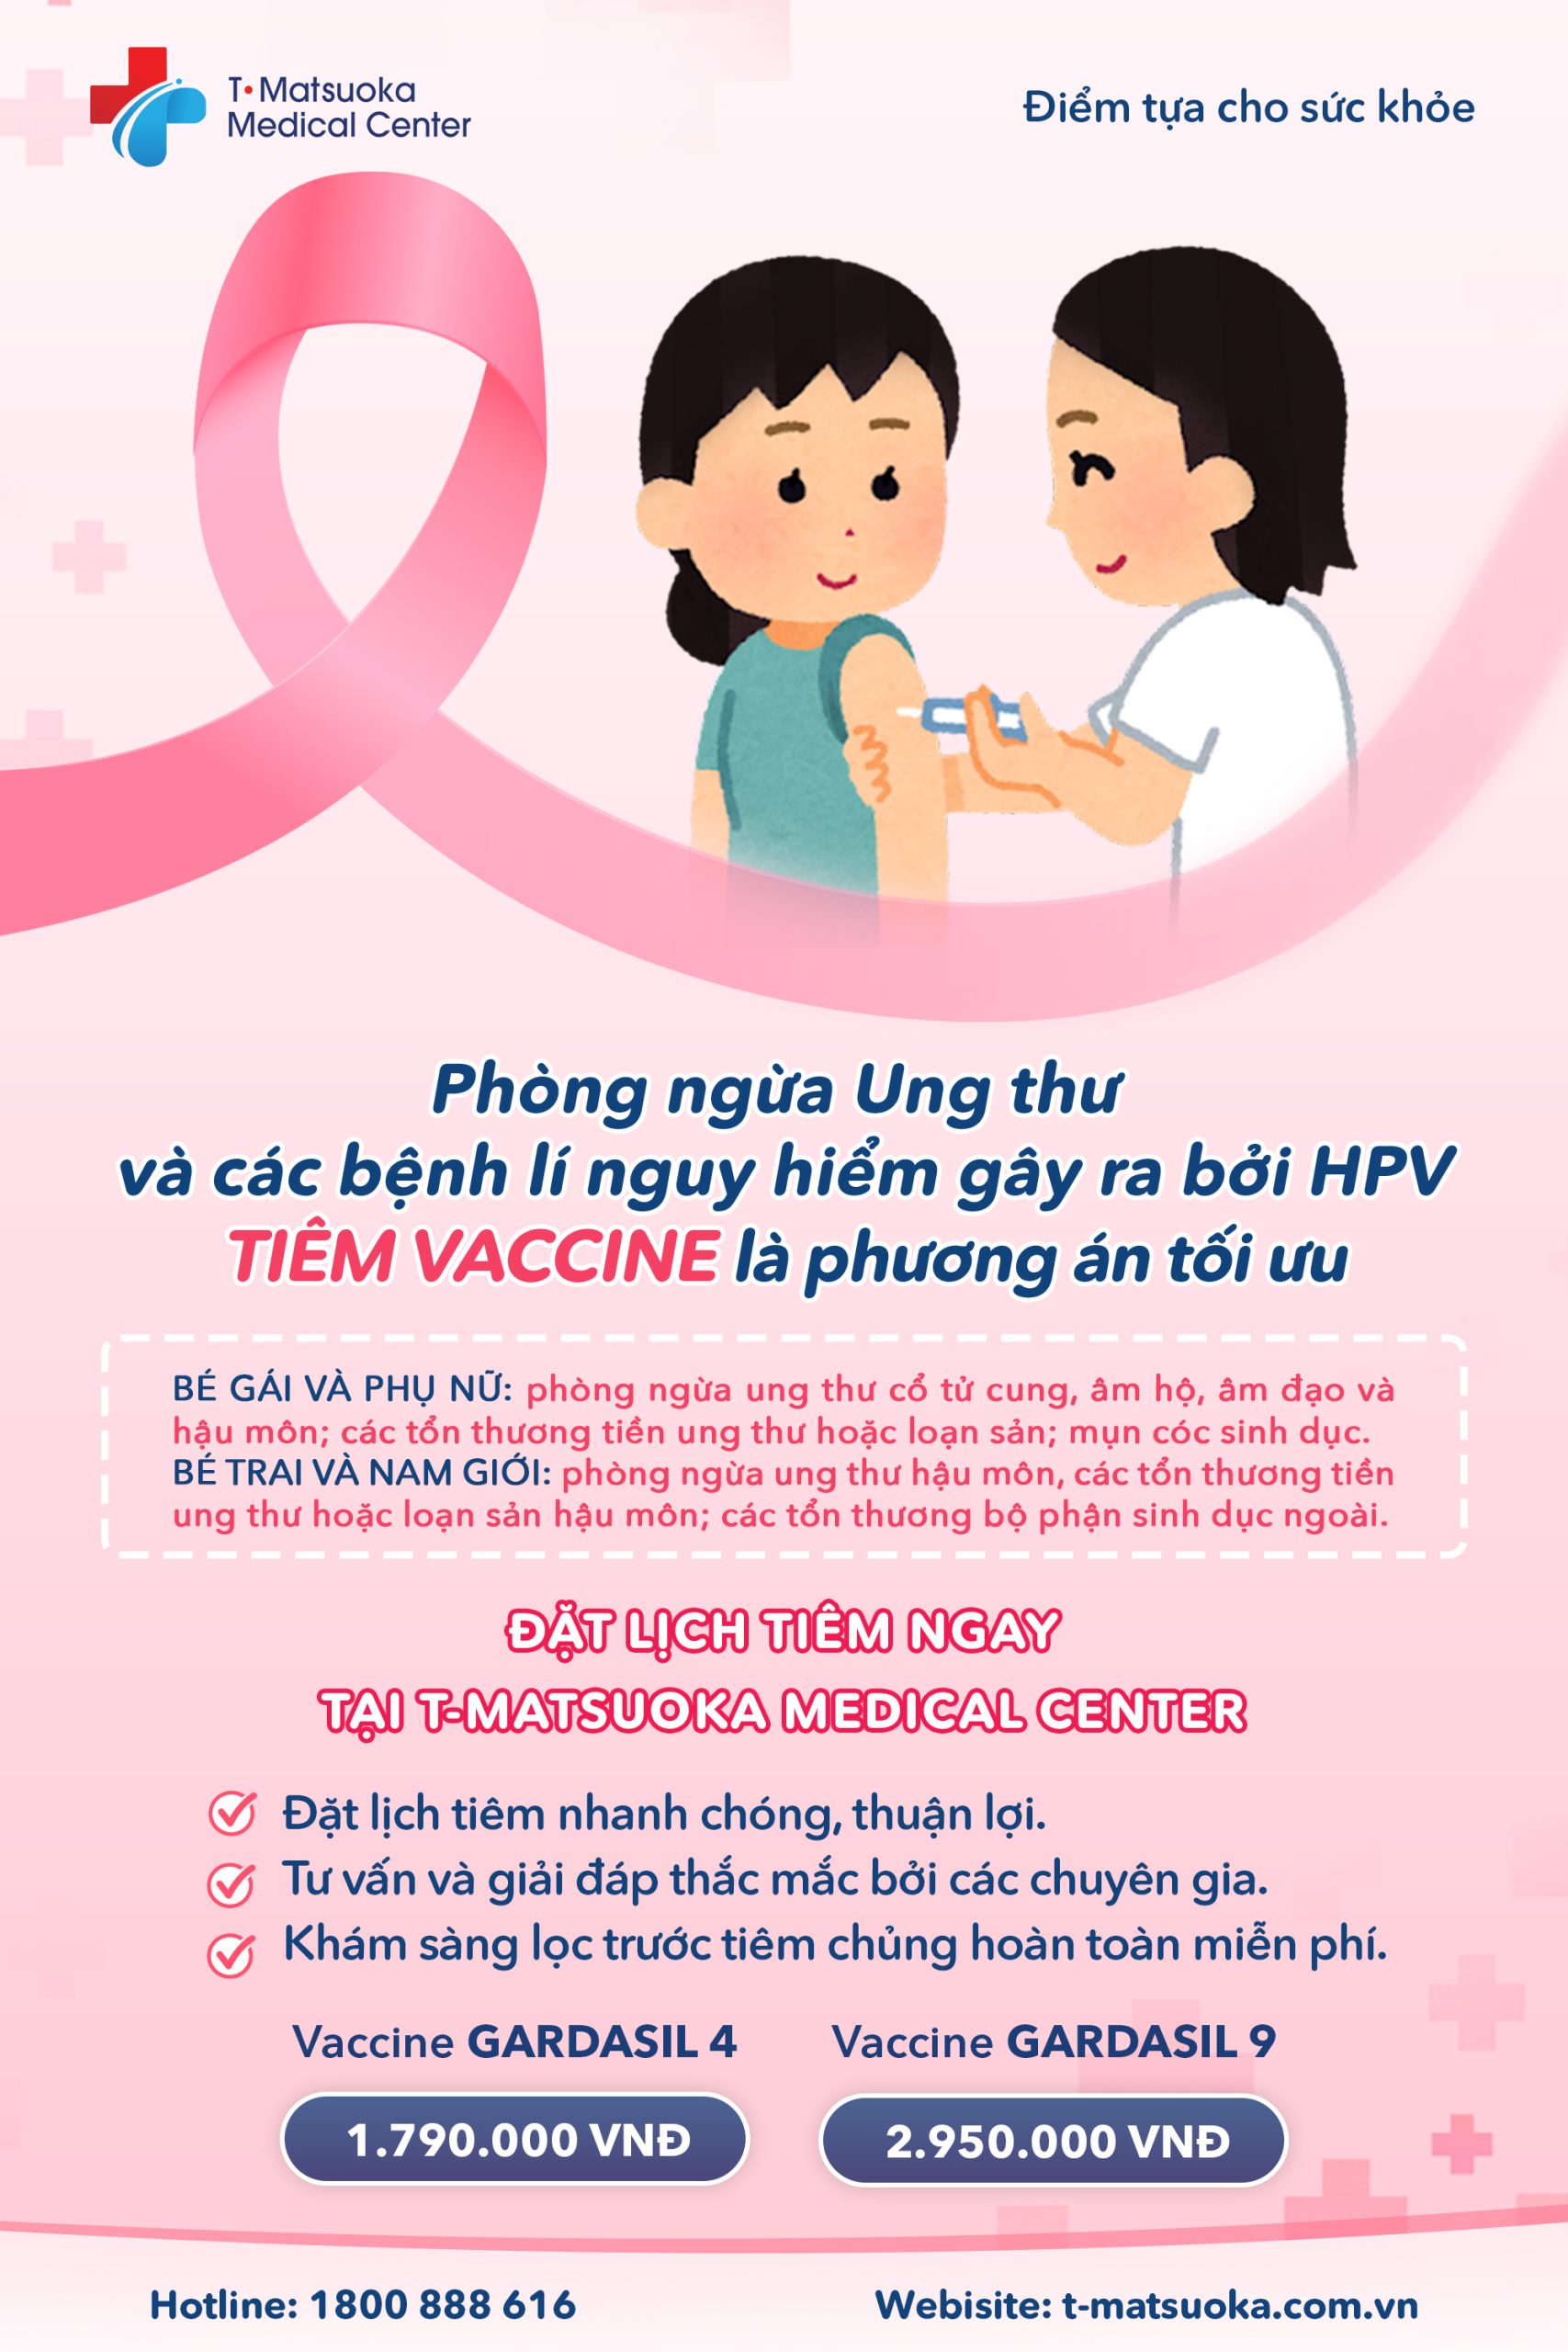 Hướng Dẫn Xử Lý Khi Tiêm Vắc-xin HPV Quá Ngày